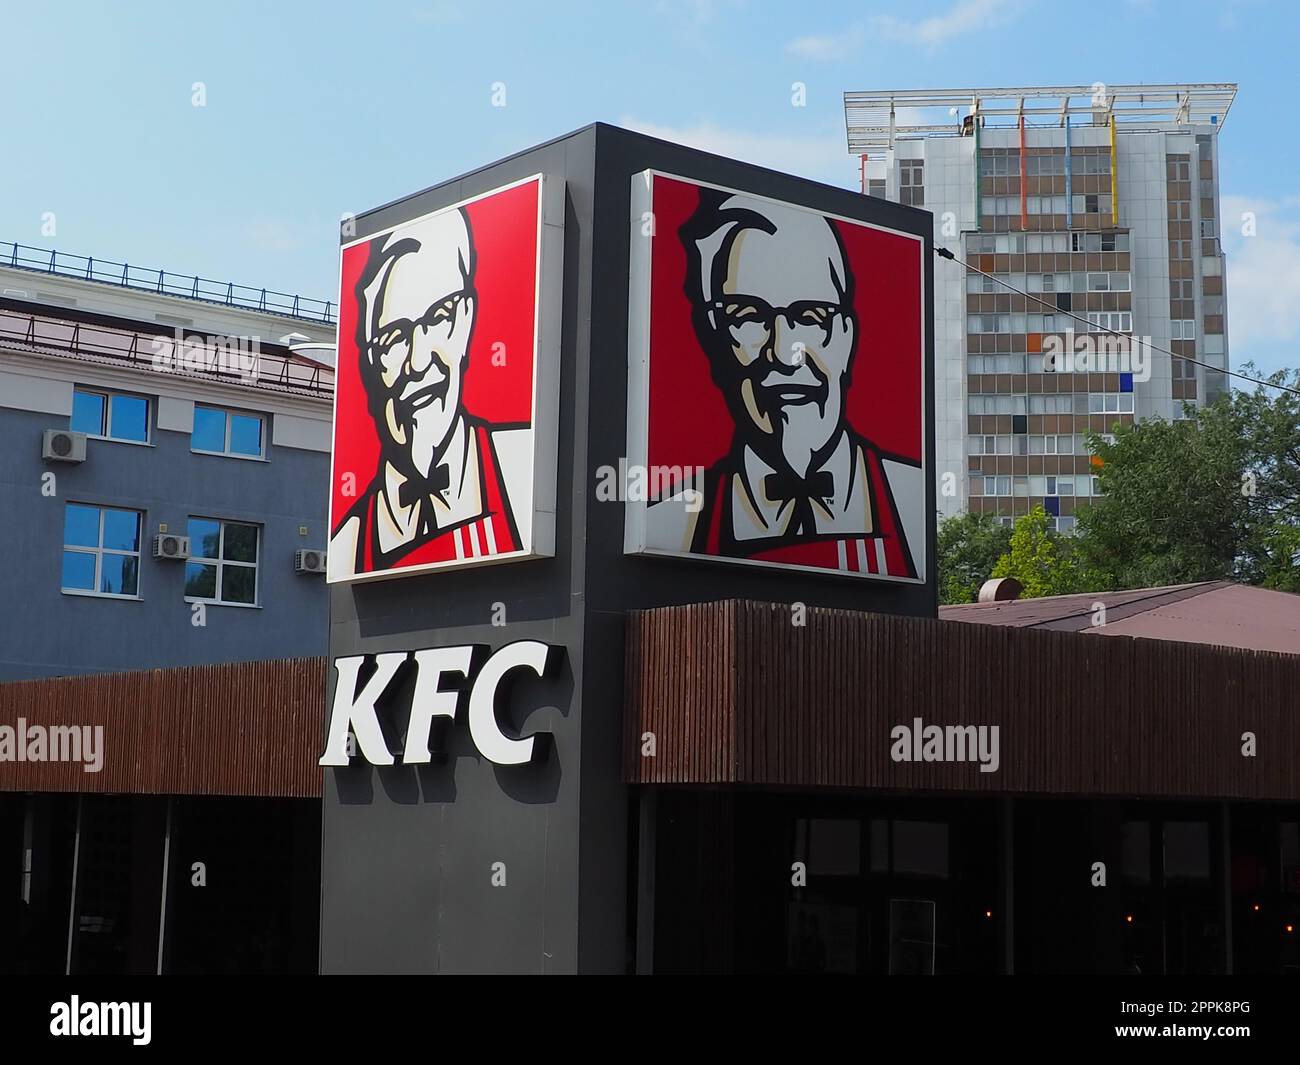 Anapa, Russie, 23 août 2021. Restaurant KFC. Kentucky Fried Chicken, ou KFC en abrégé, est une chaîne internationale de restauration spécialisée dans les plats de poulet. Marque, logo ou publicité extérieure Banque D'Images